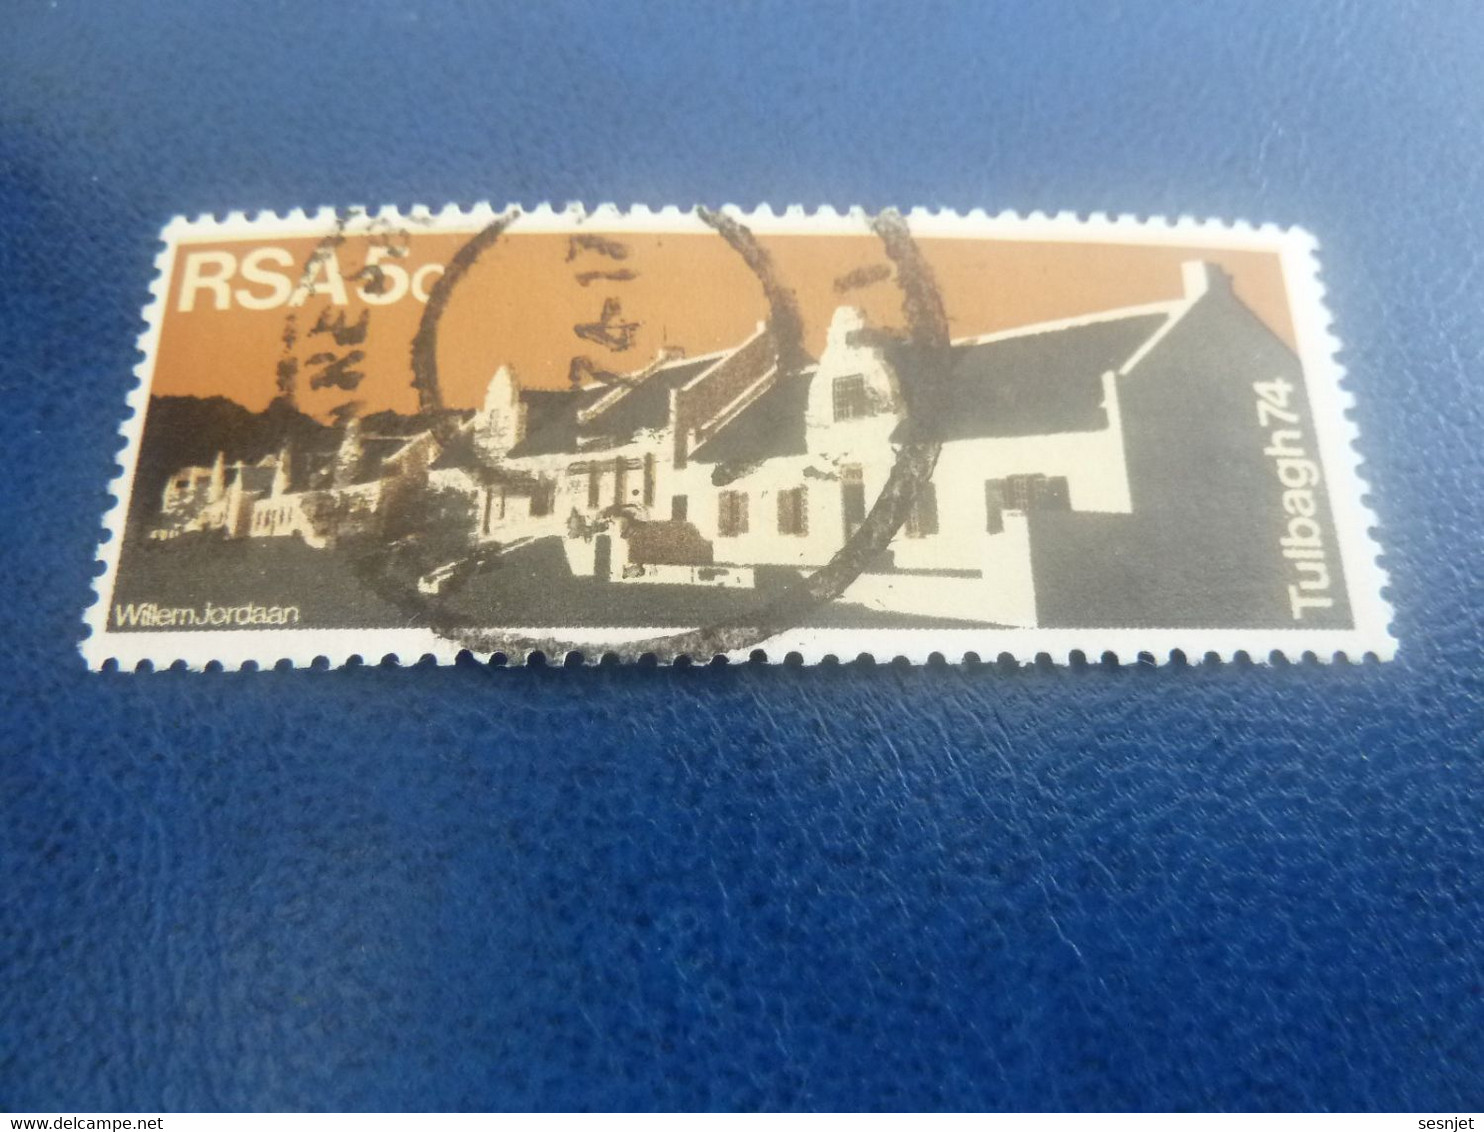 Rsa - Tulbagh 74 - Wilem Jordaan - 5 C. - Multicolore - Oblitéré - Année 1974 - - Used Stamps